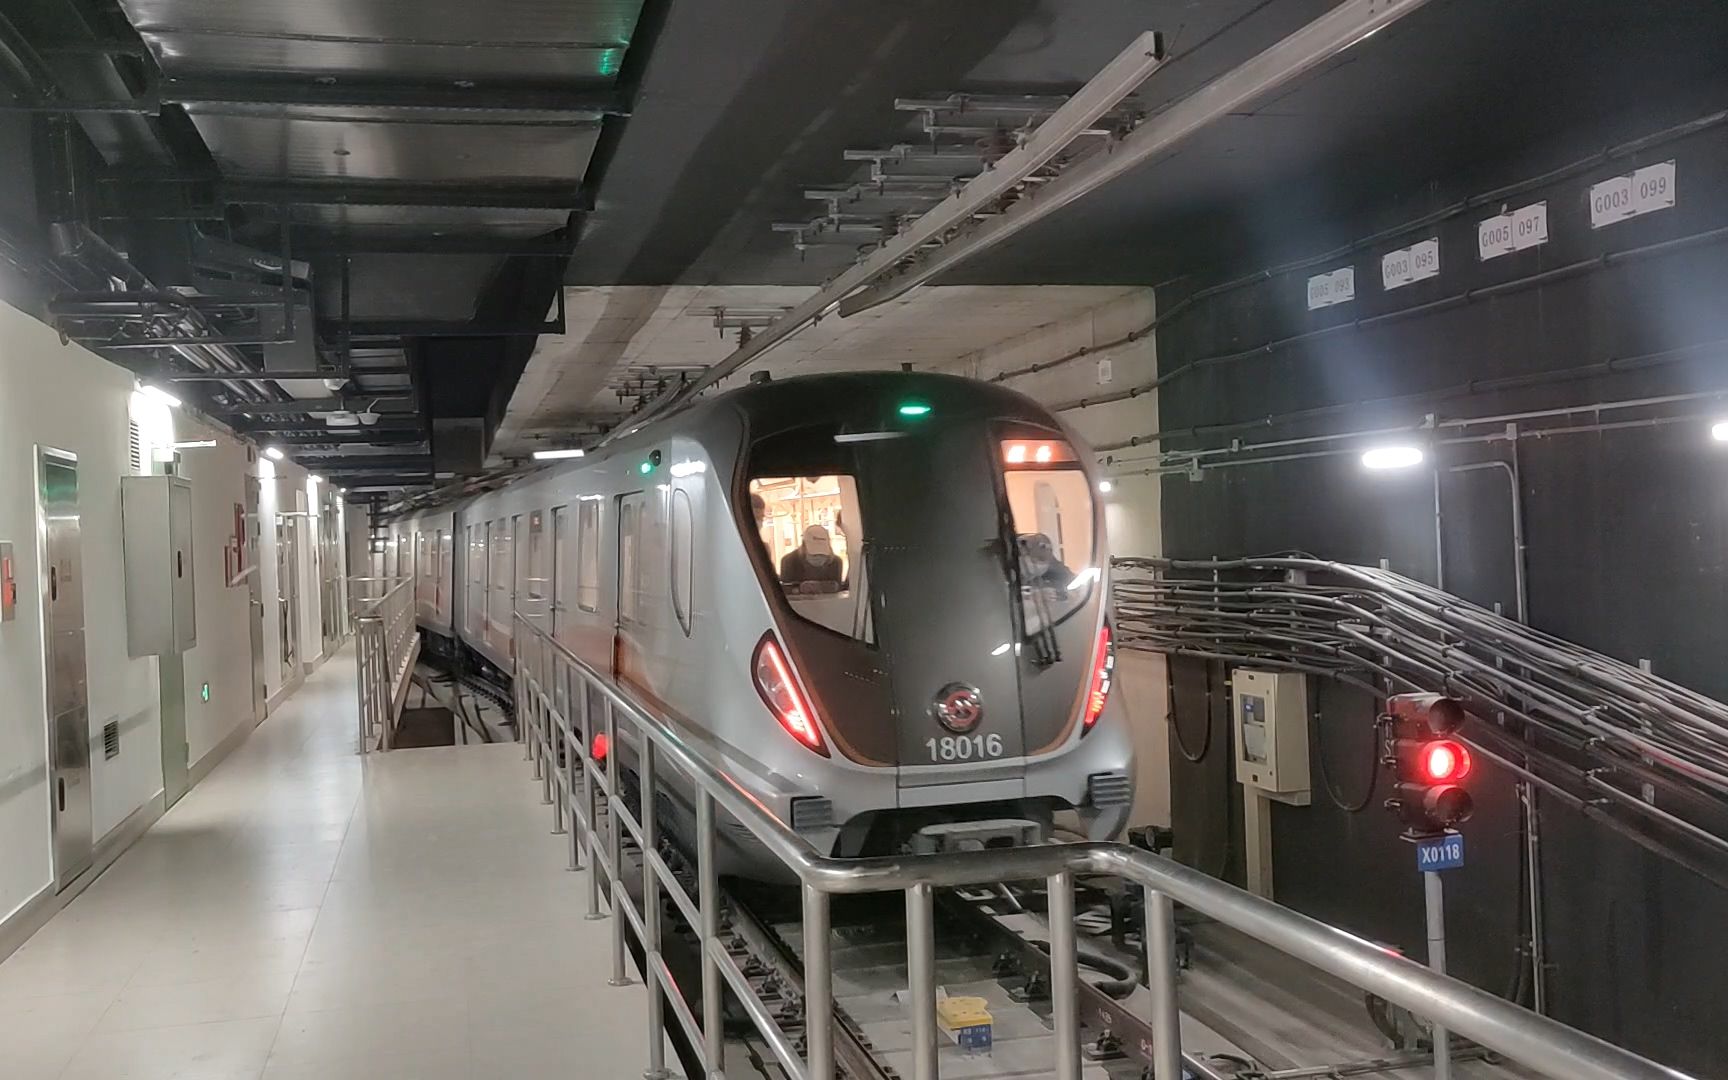 上海地铁18号线新车图片